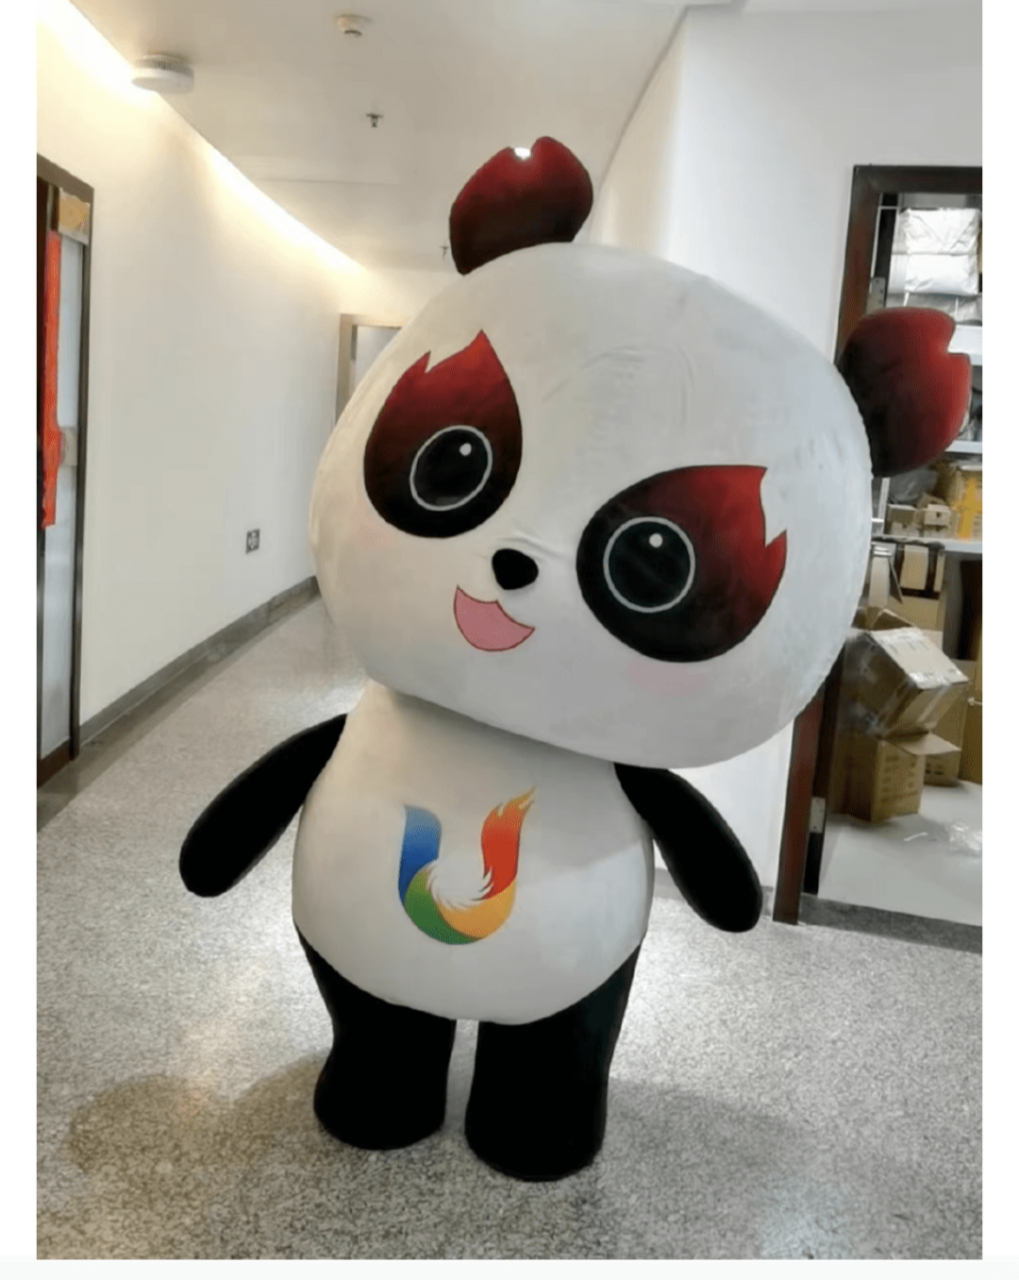 成都大运会的吉祥物名为蓉宝,以熊猫为设计灵感,一只憨态可掬的